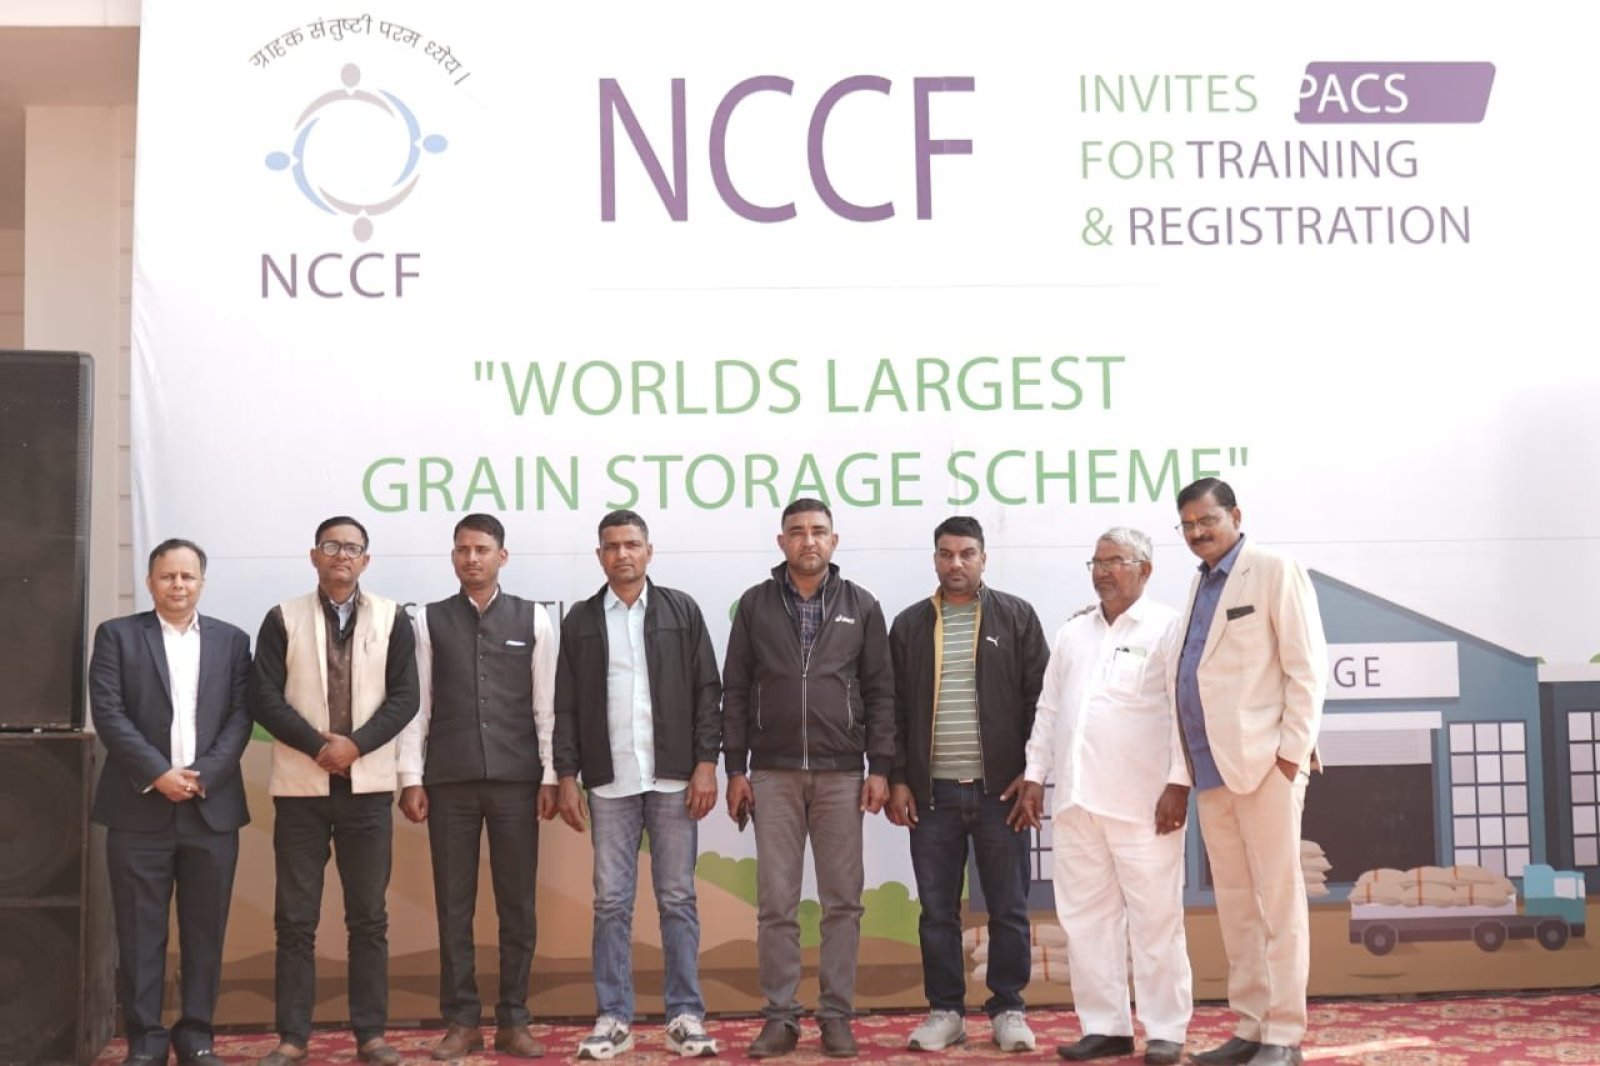 NCCF ने ‘दुनिया के सबसे बड़े अनाज संग्रह योजना’ के लिए PACS के प्रशिक्षण और पंजीकरण के लिए किया मेगा ड्राइव का आयोजन